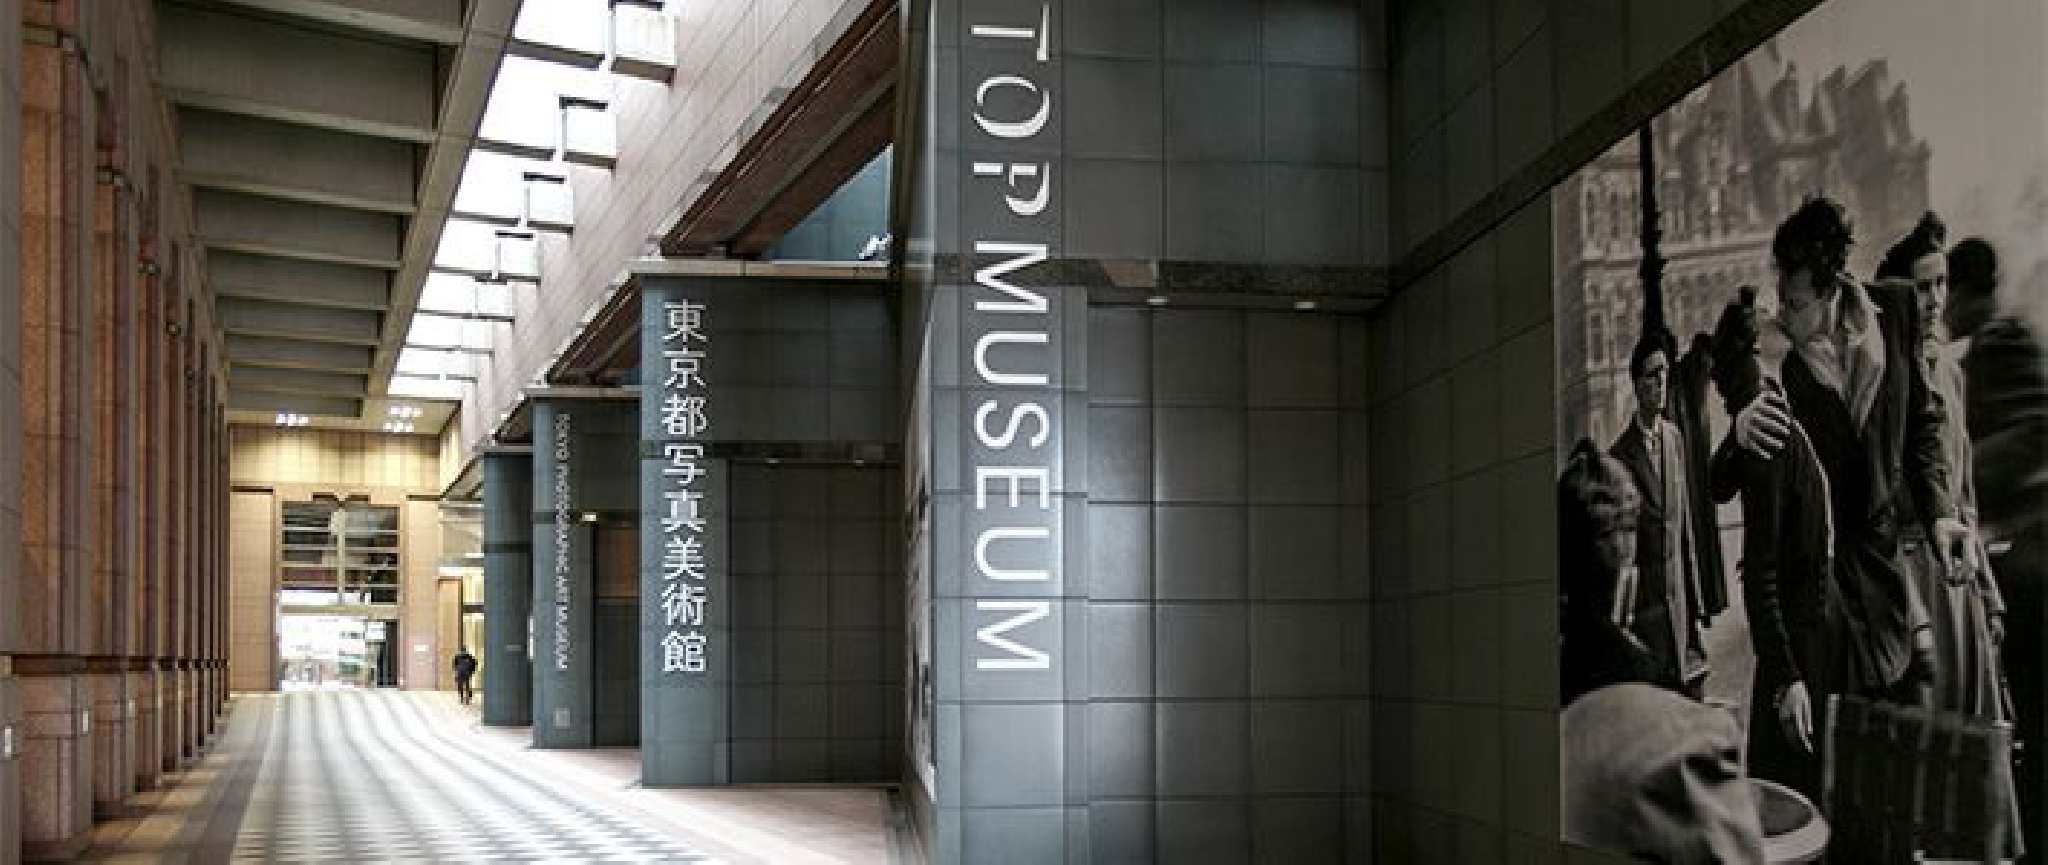 tokyo-photographic-art-museum-bảo-tàng-nhiếp-ảnh.jpg